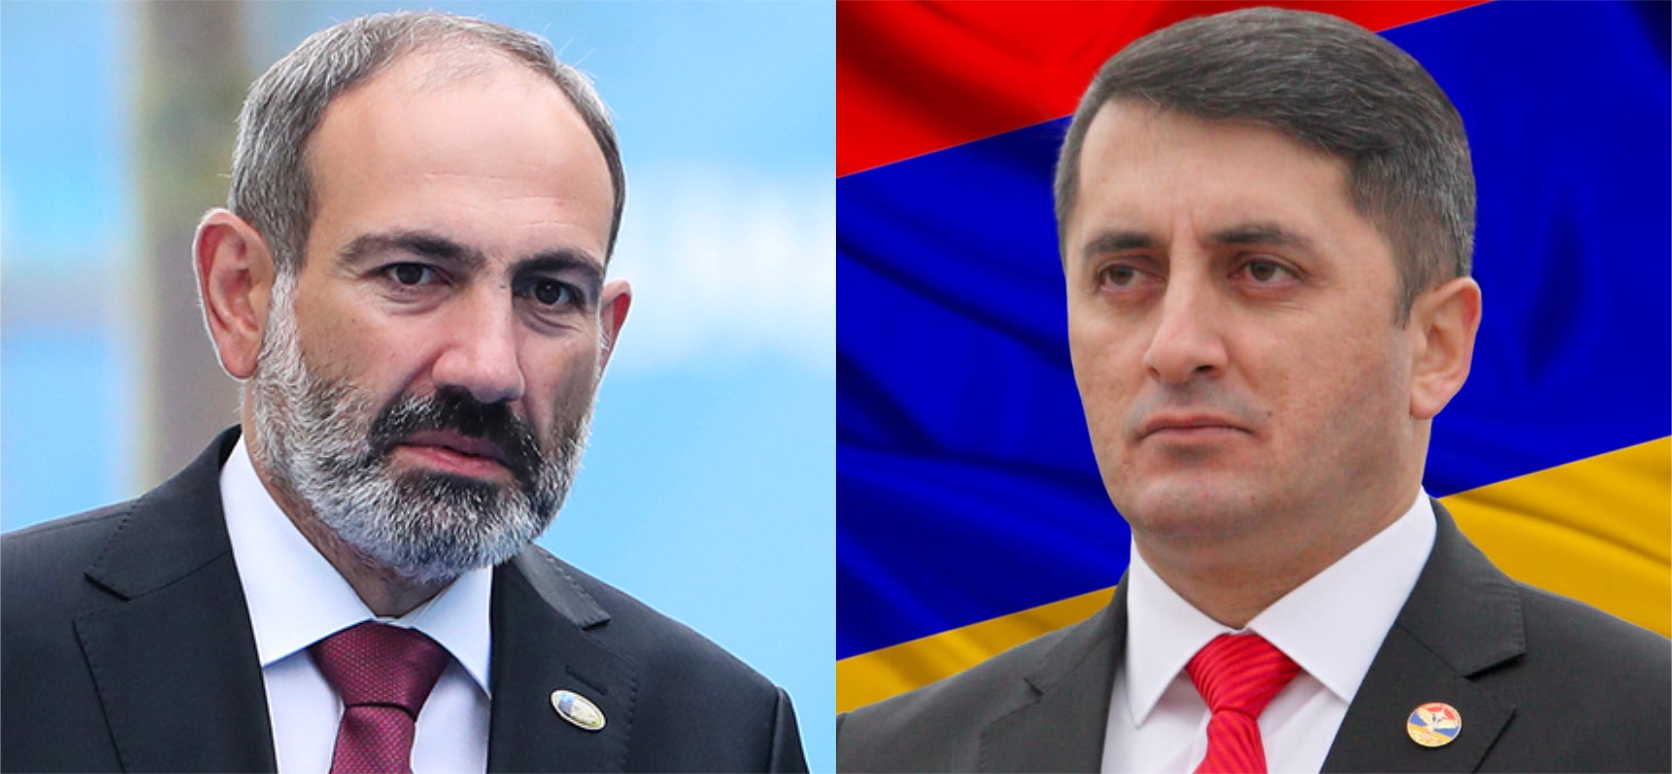 Փաշինյա՛ն Նիկոլ, Հայաստանի հաջորդ իշխանությունը, որը մե՛նք ենք ձևավորելու, լինելու է իսկապես ազգային-պետական․ Ասրյանը՝ վարչապետին